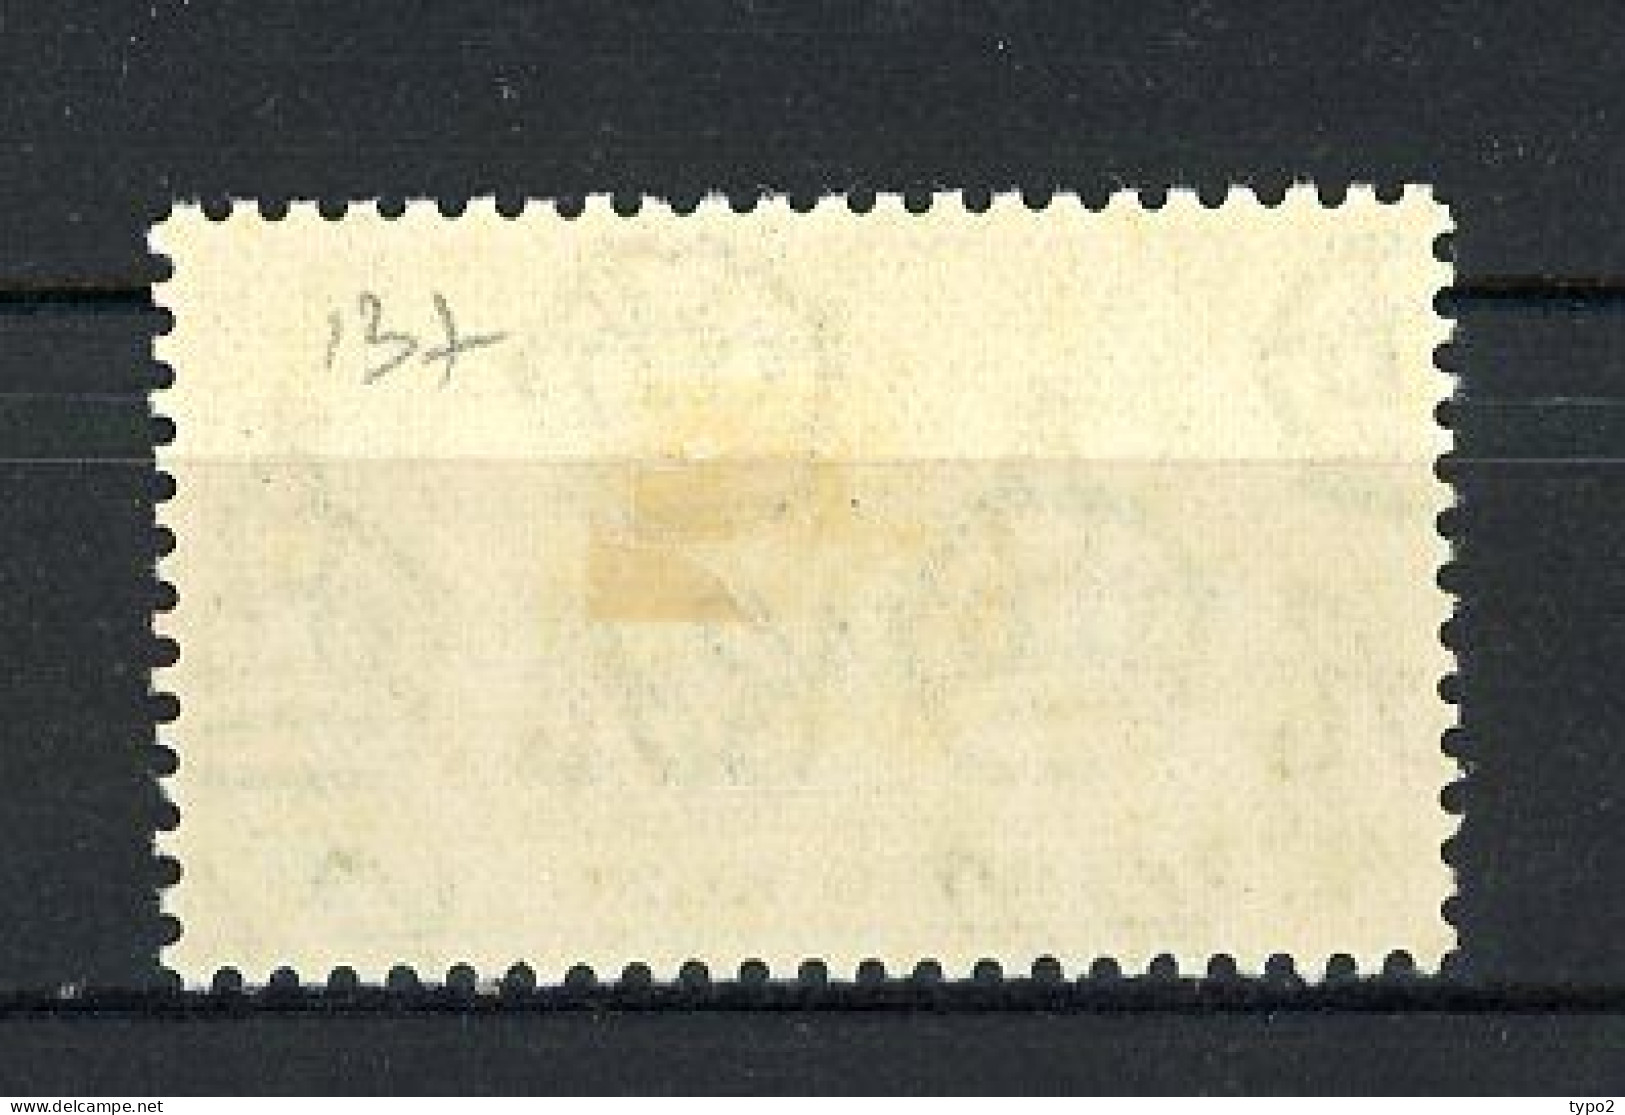 H-K  Yv. N° 137 SG N°137  *  4c Vert Couronnement George VI Cote 4 Euro BE  2 Scans - Unused Stamps